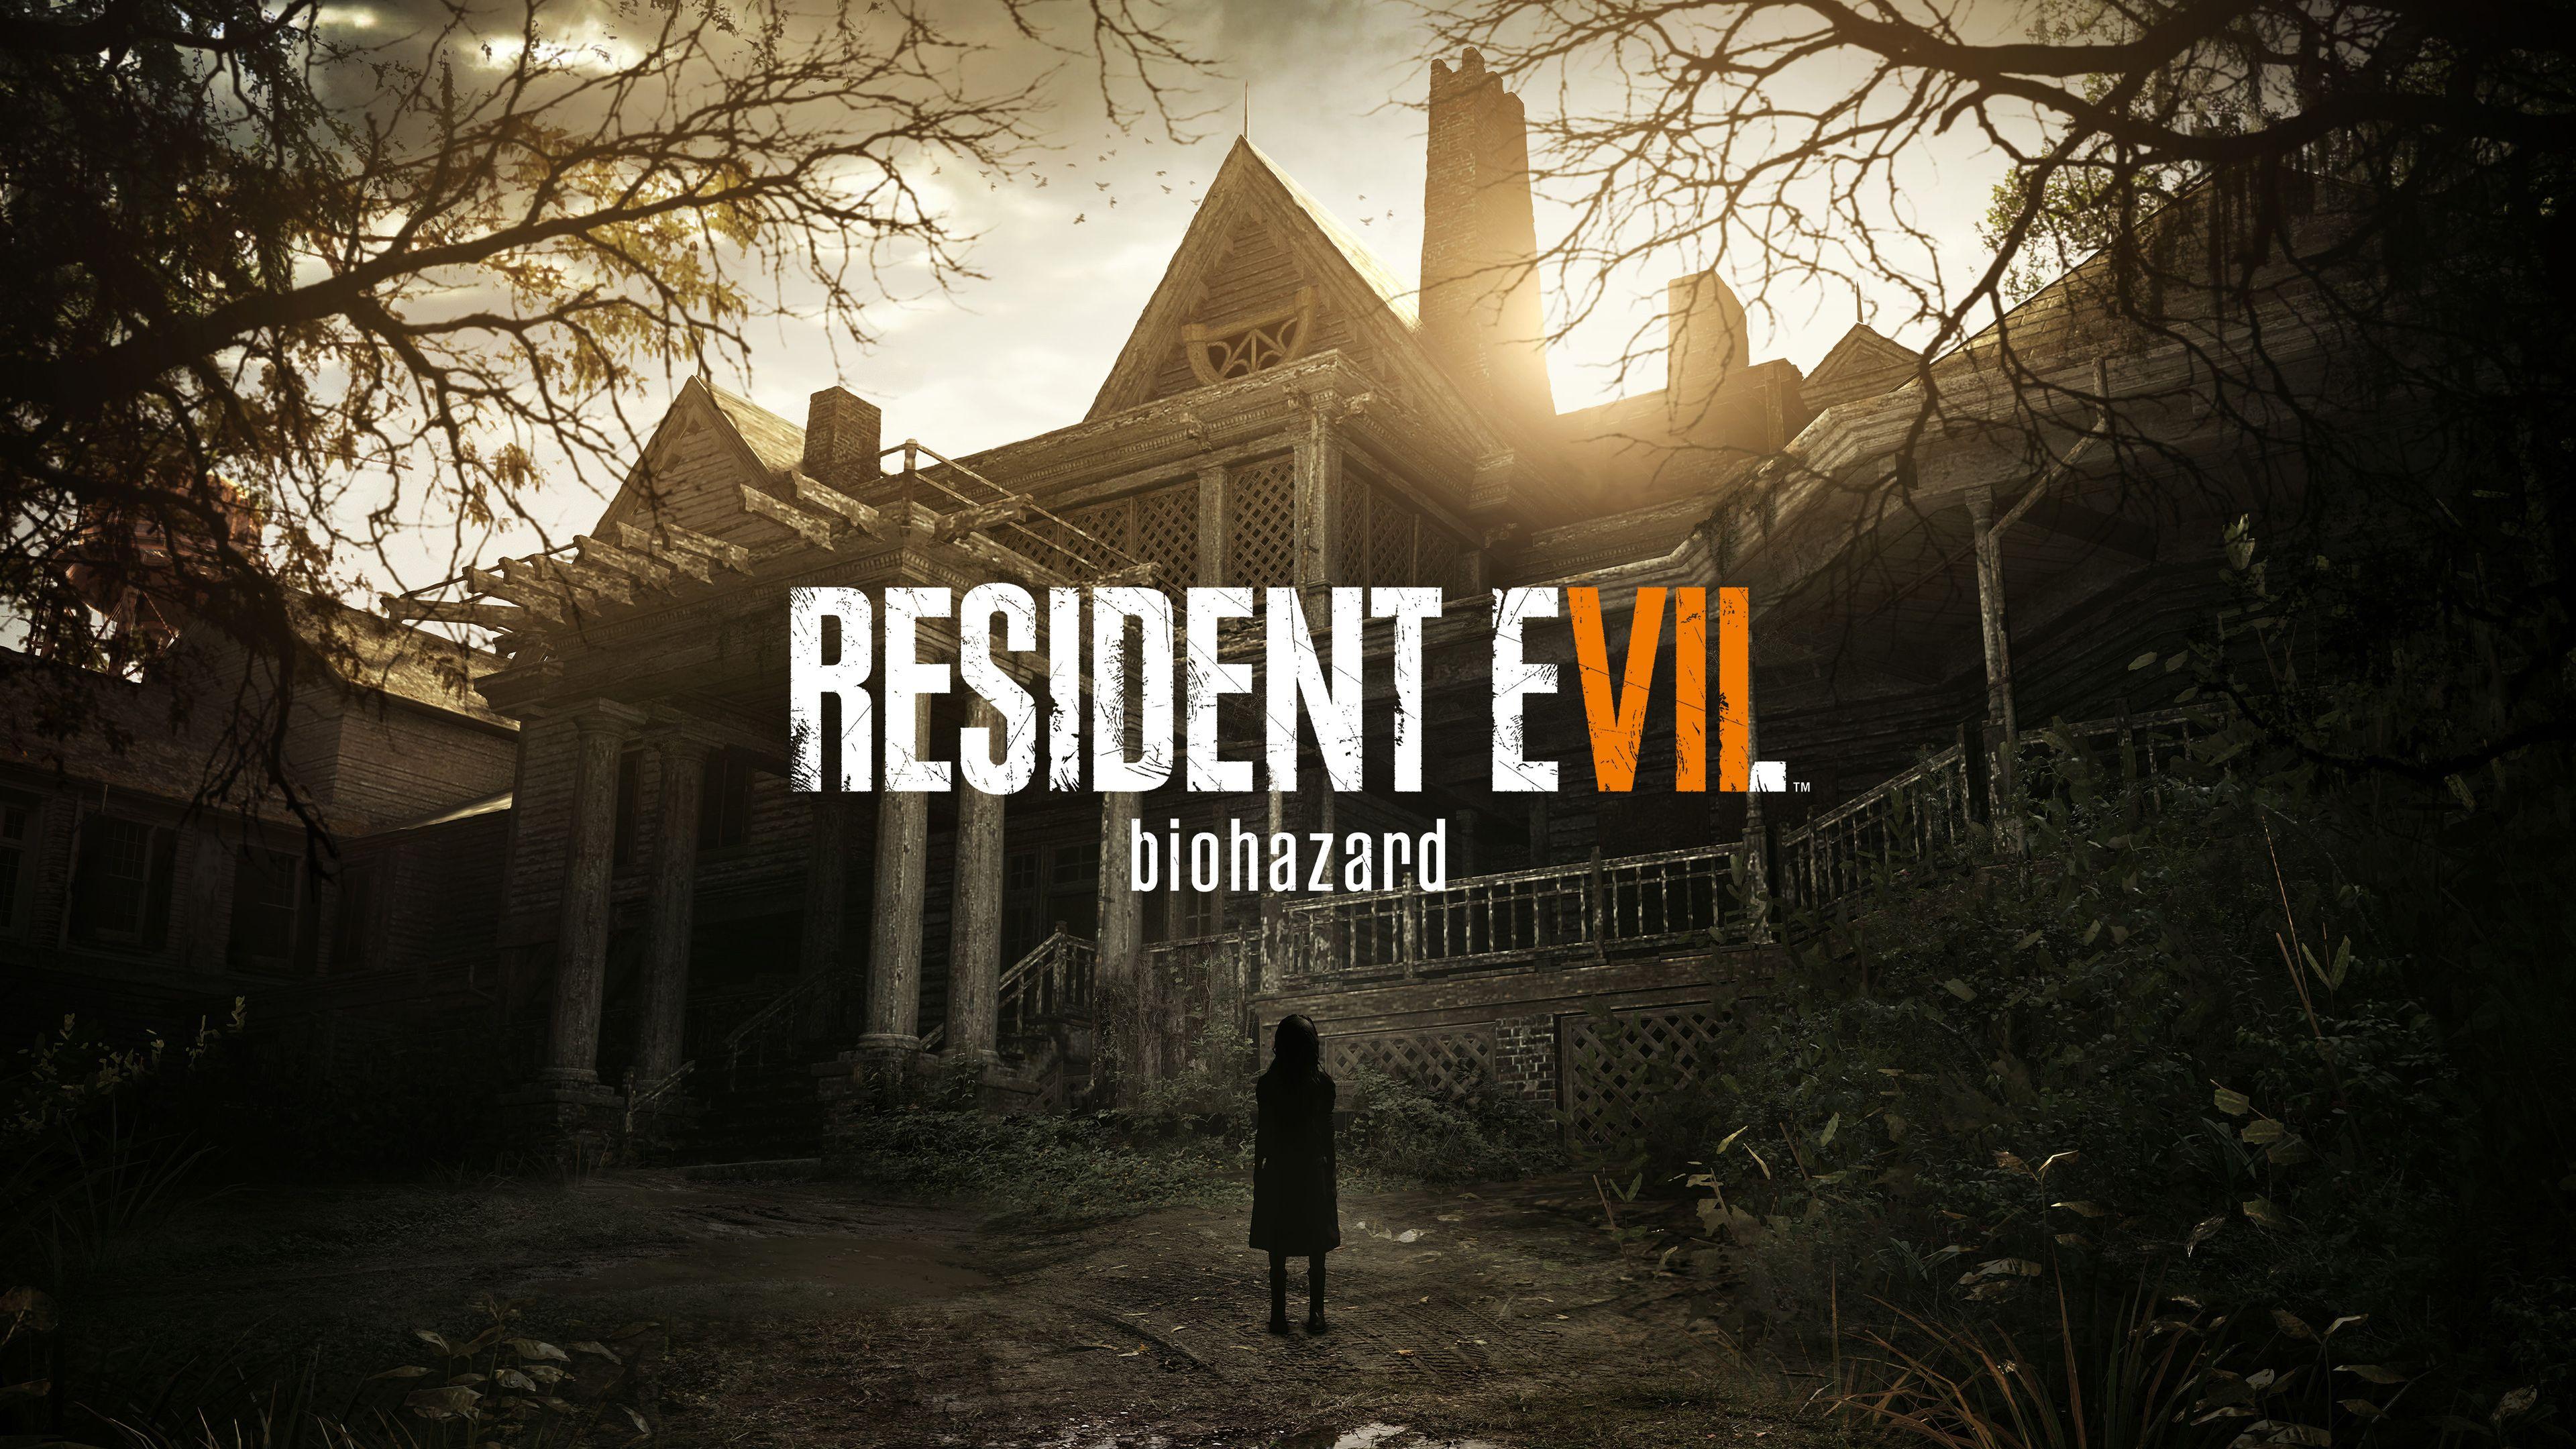 Resident Evil 7 e remakes dos clássicos chegarão ao PS5 e Xbox Series; Veja quando! 2022 Viciados